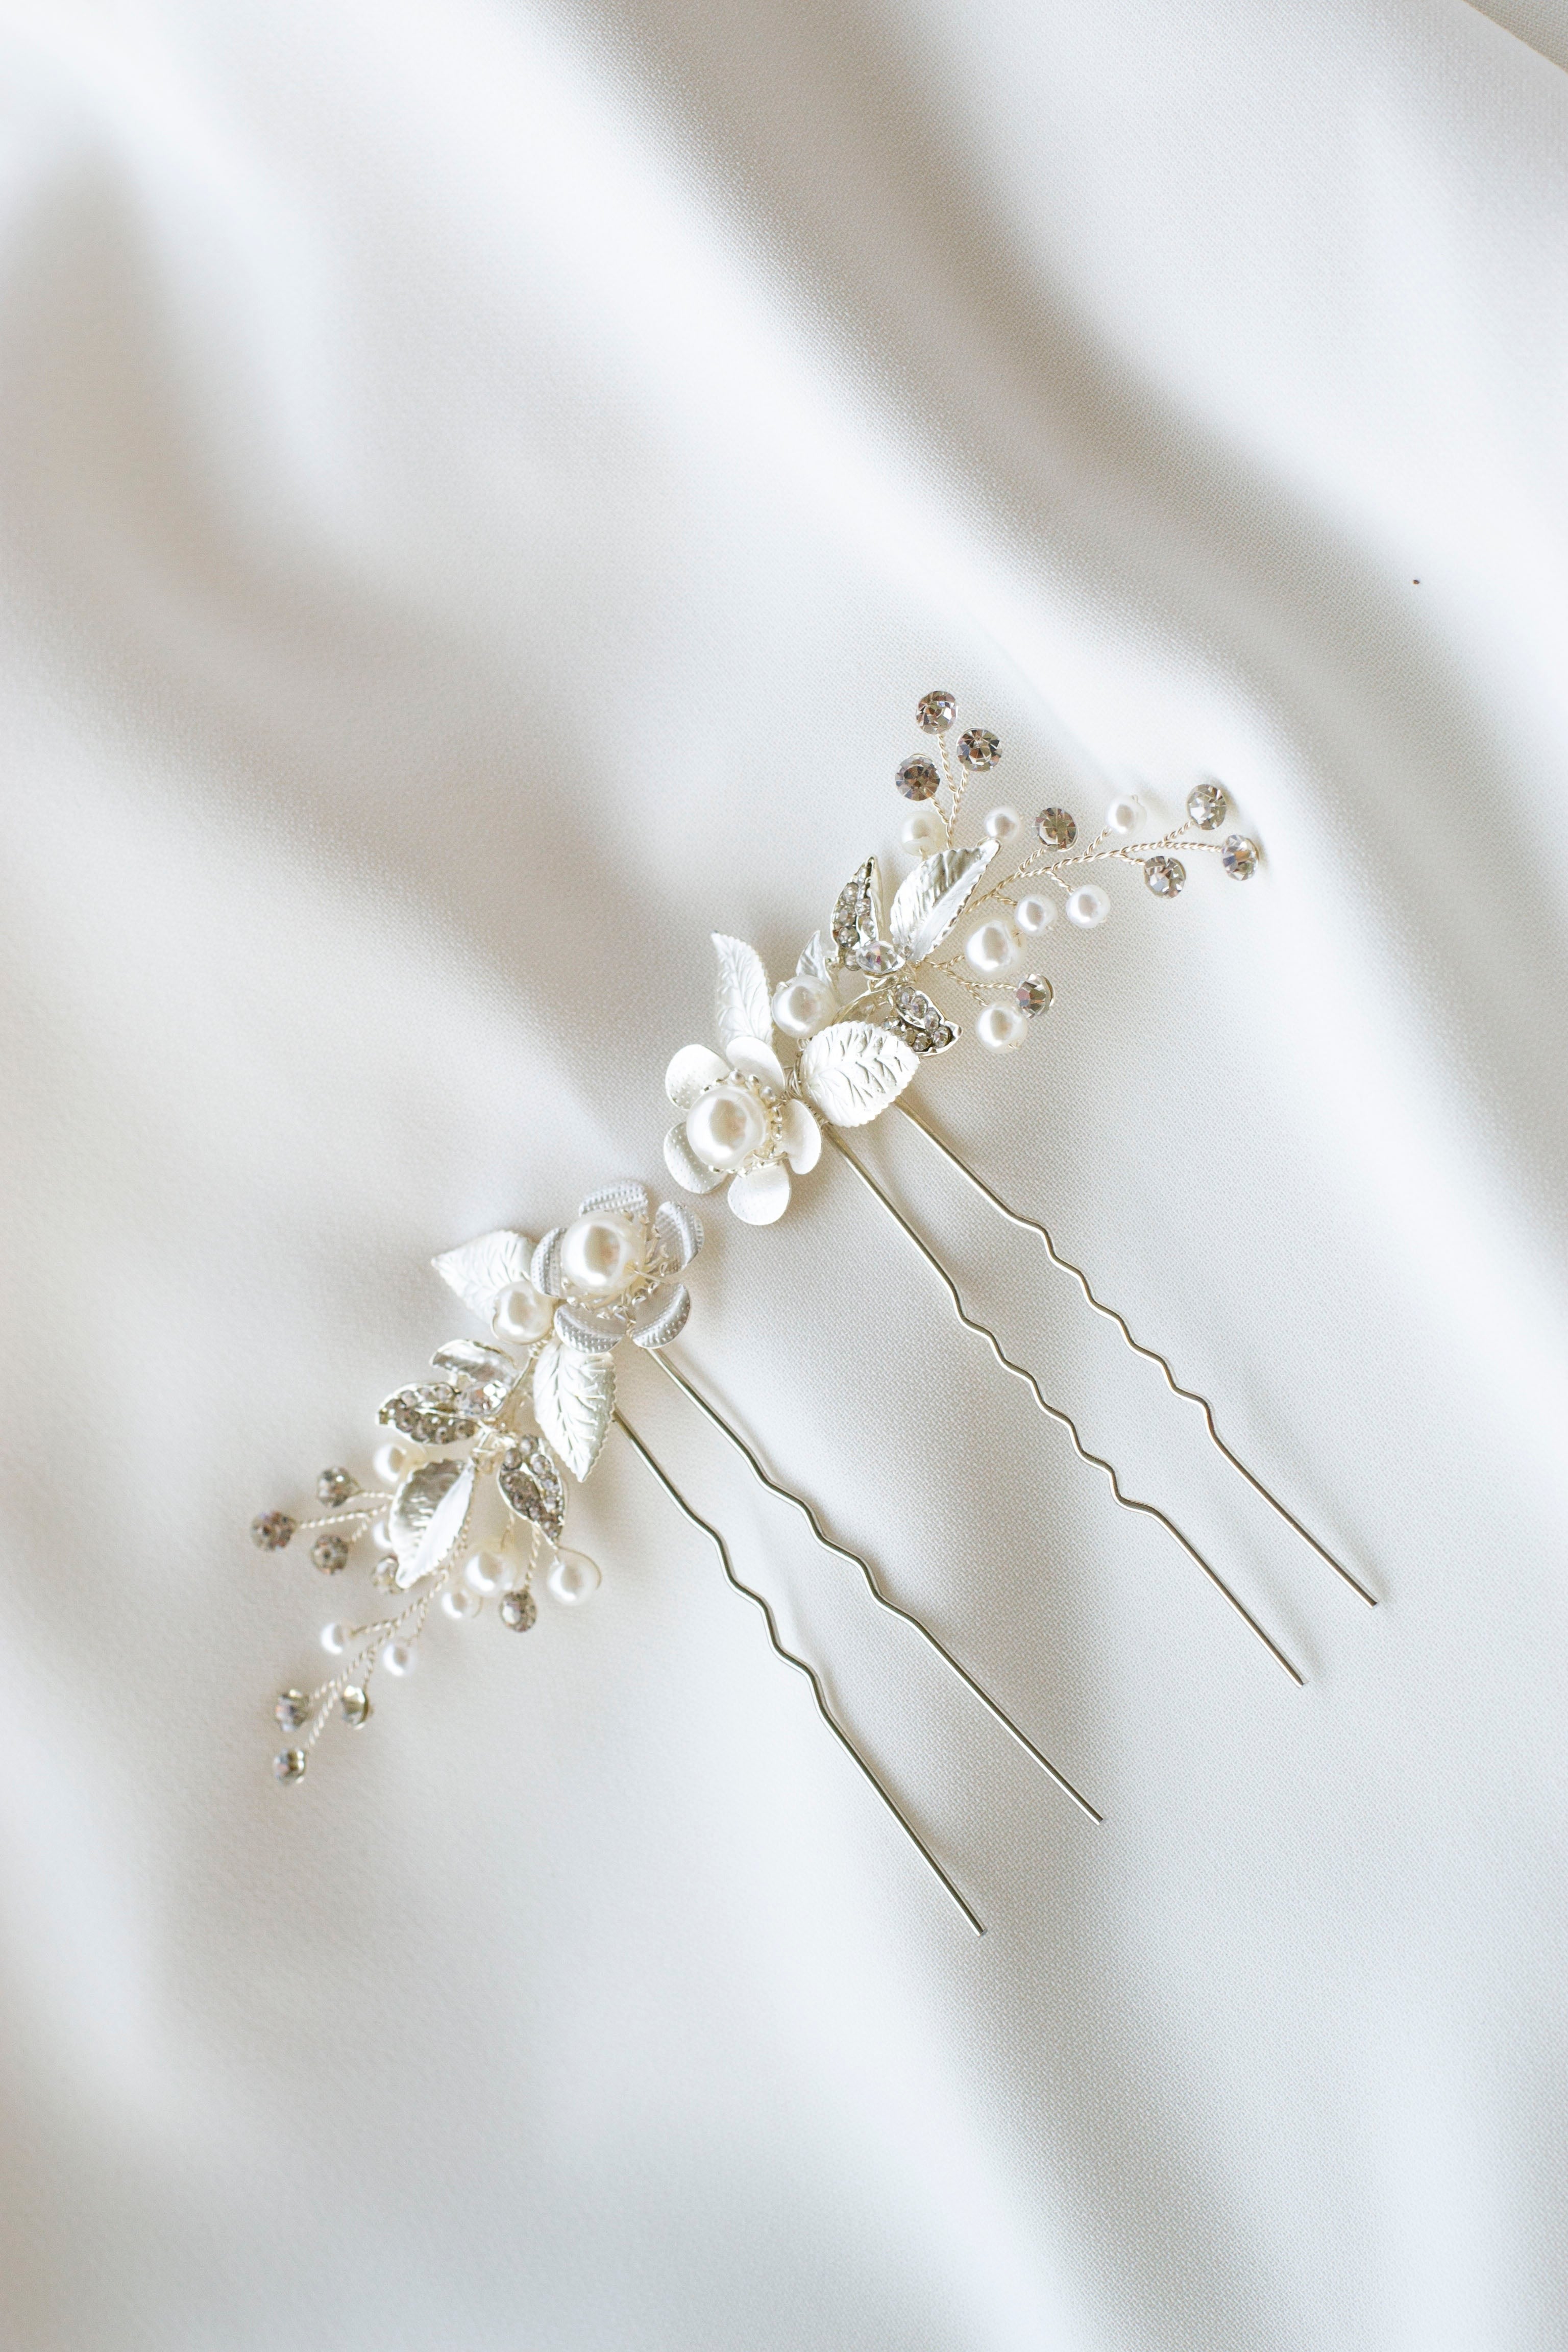 Deux pics à cheveux floraux en argent, perles et cristaux